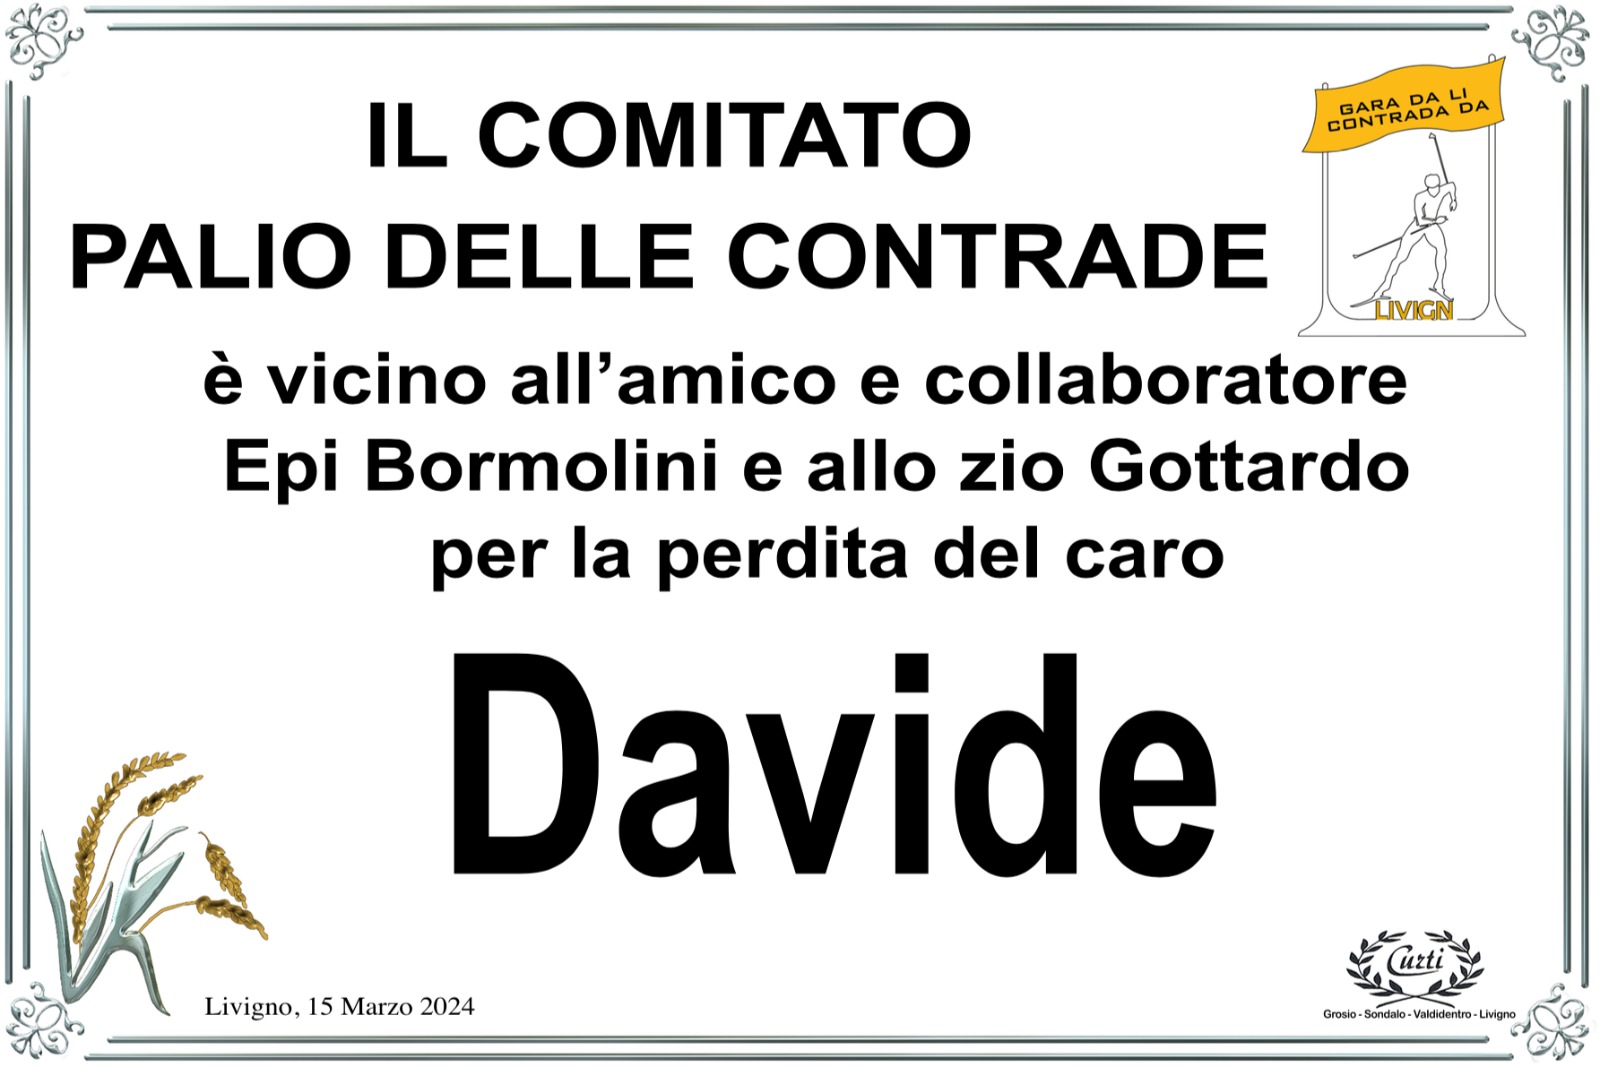 /PARTECIPAZIONE PALIO DELLE CONTRADE X DAVIDE